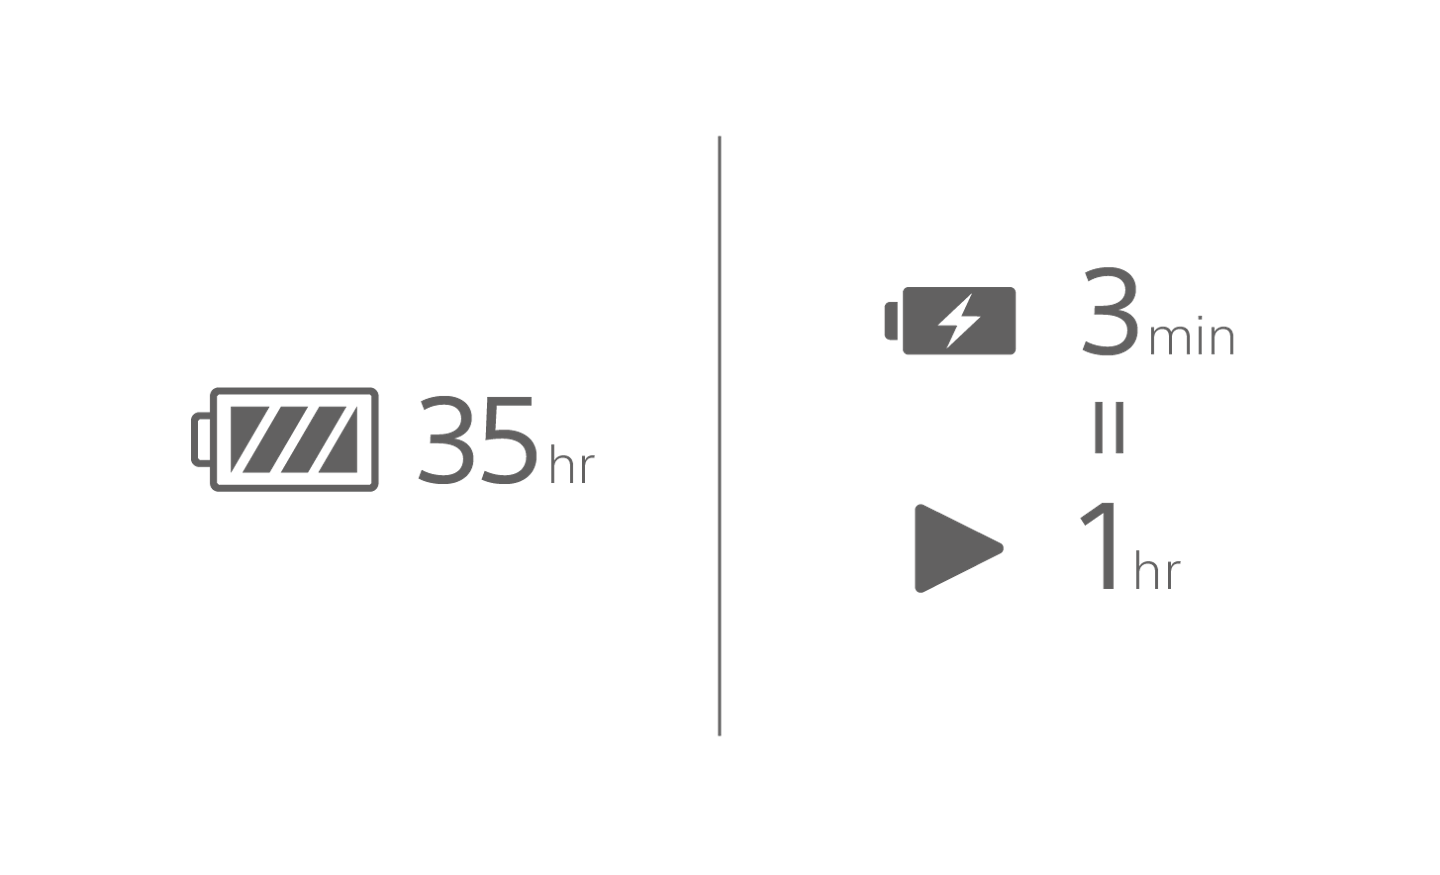 標註 35 小時文字的電池圖示、充電中的電池圖示，上面有 3 分鐘的文字，以及標註 1 小時的播放圖示